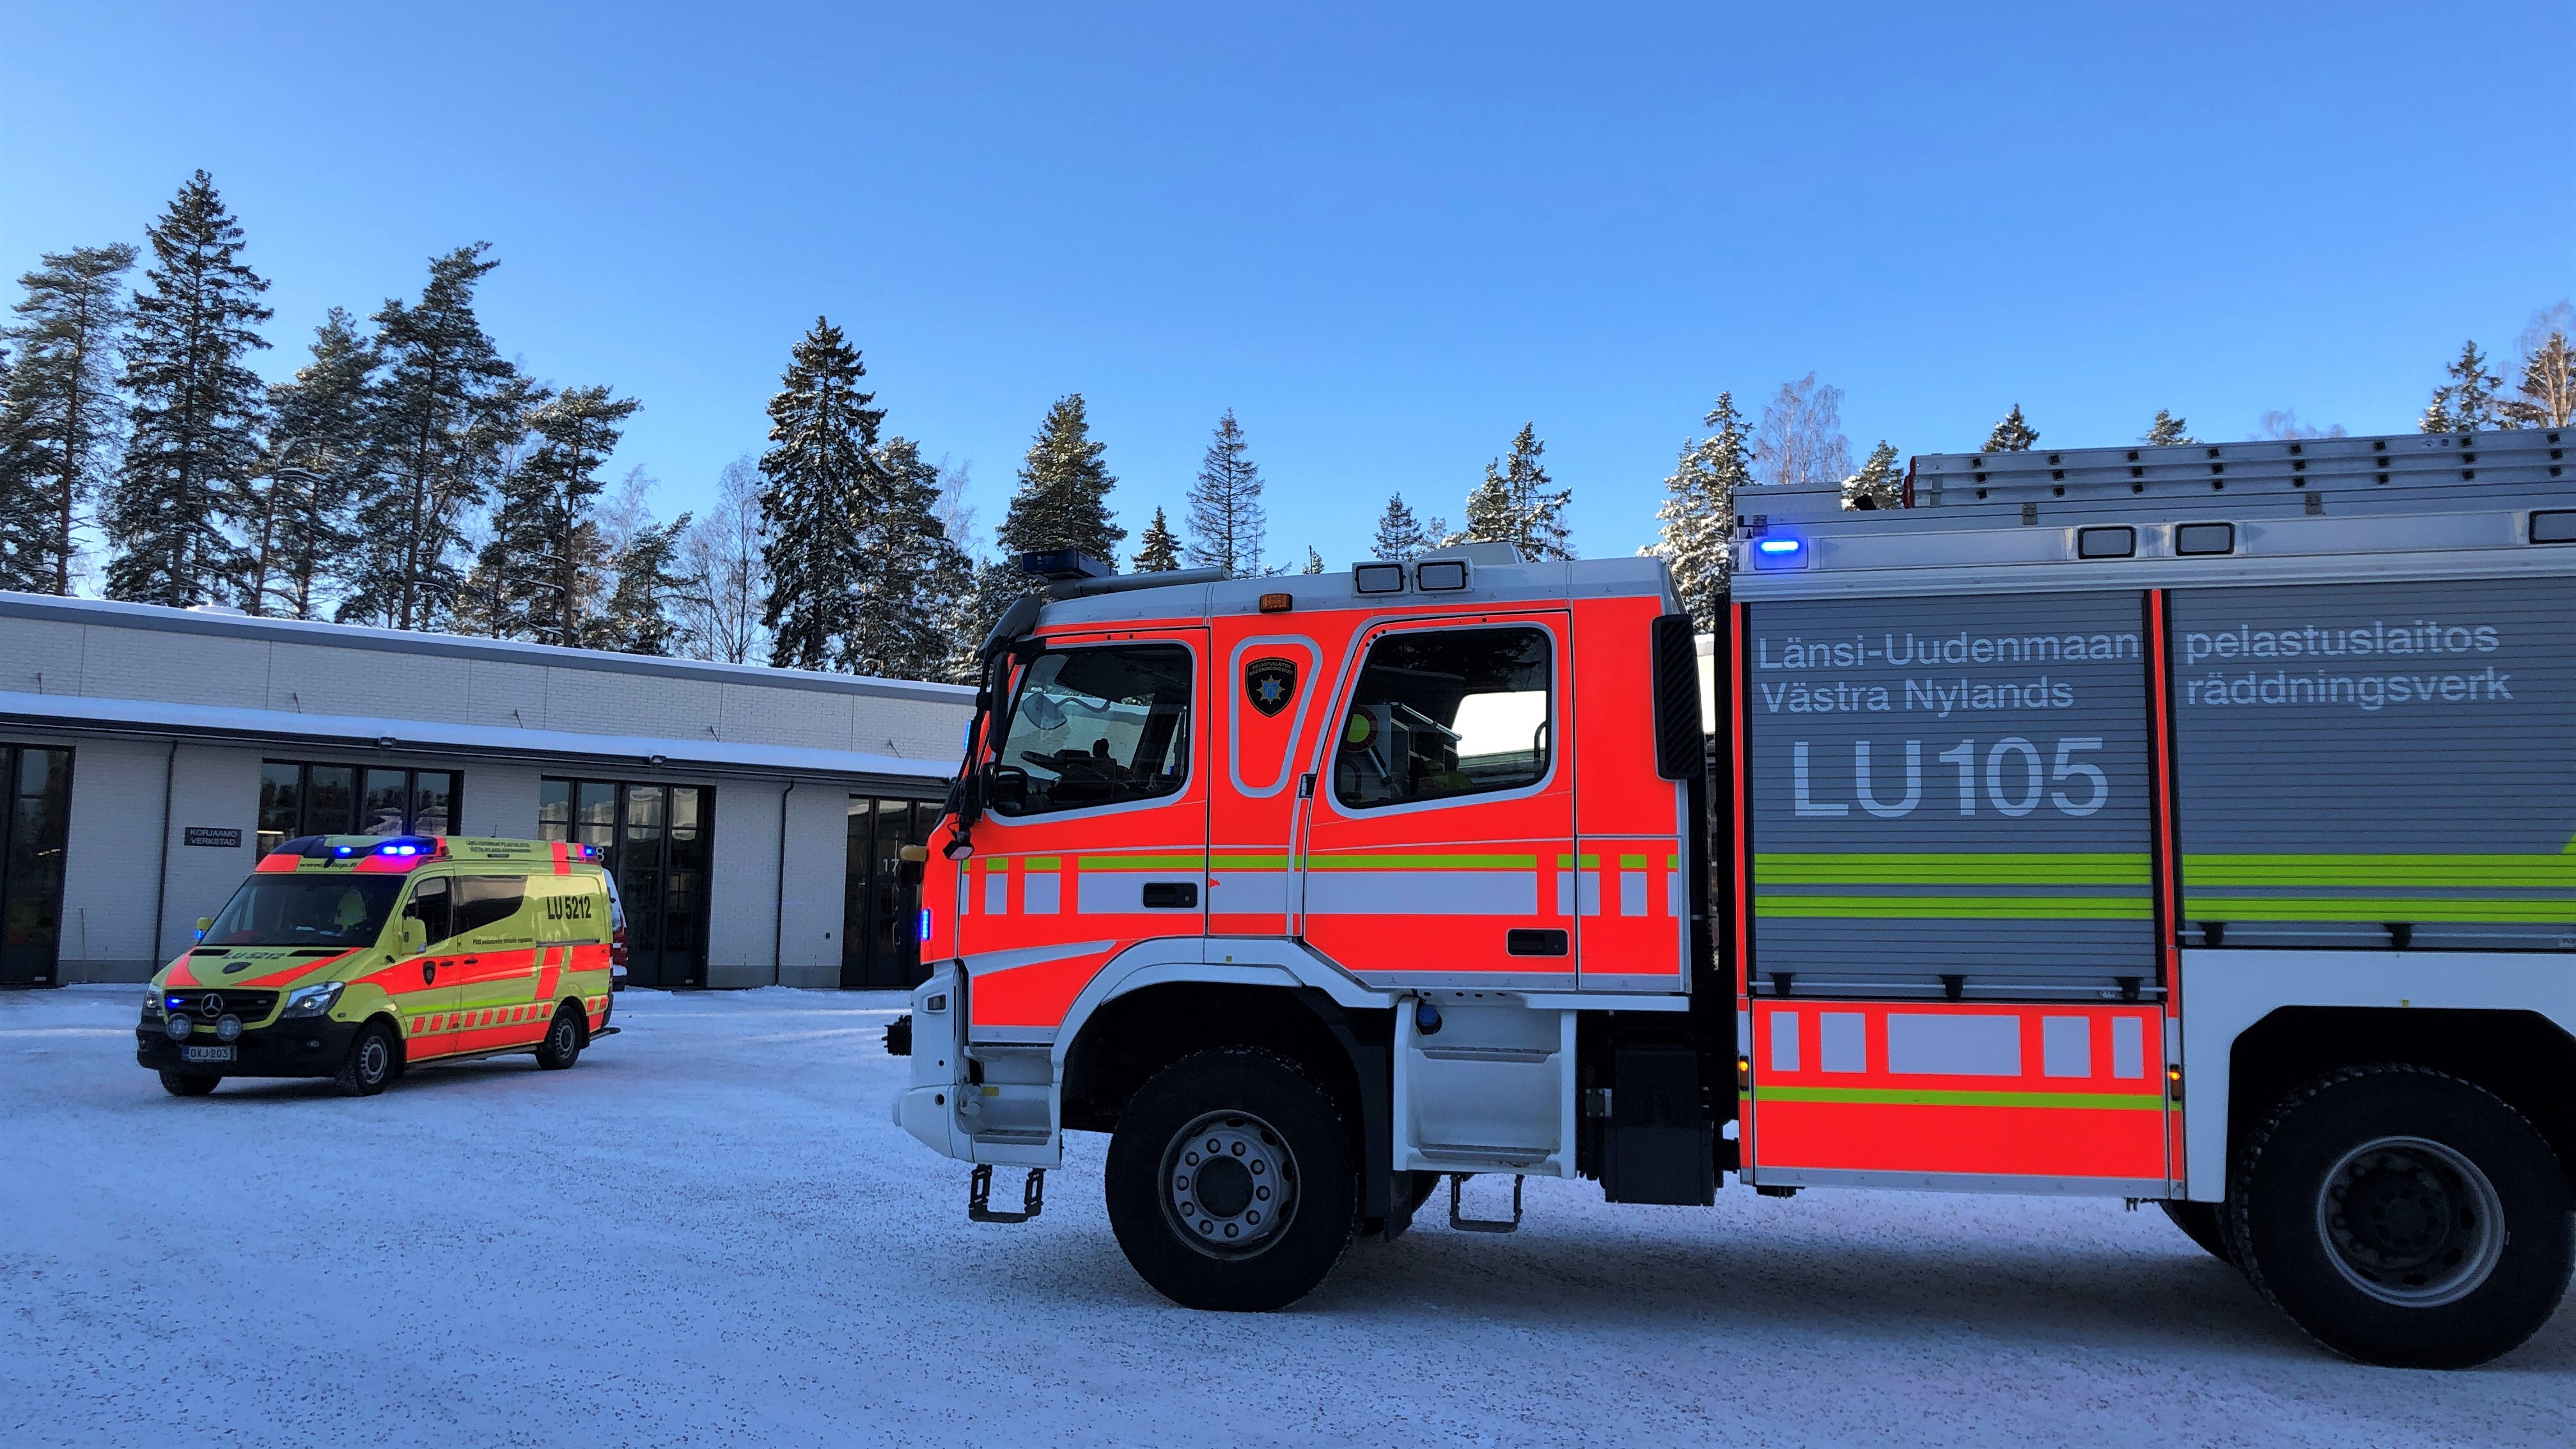  Västra Nylands räddningsverk ambulans och brandbil. 